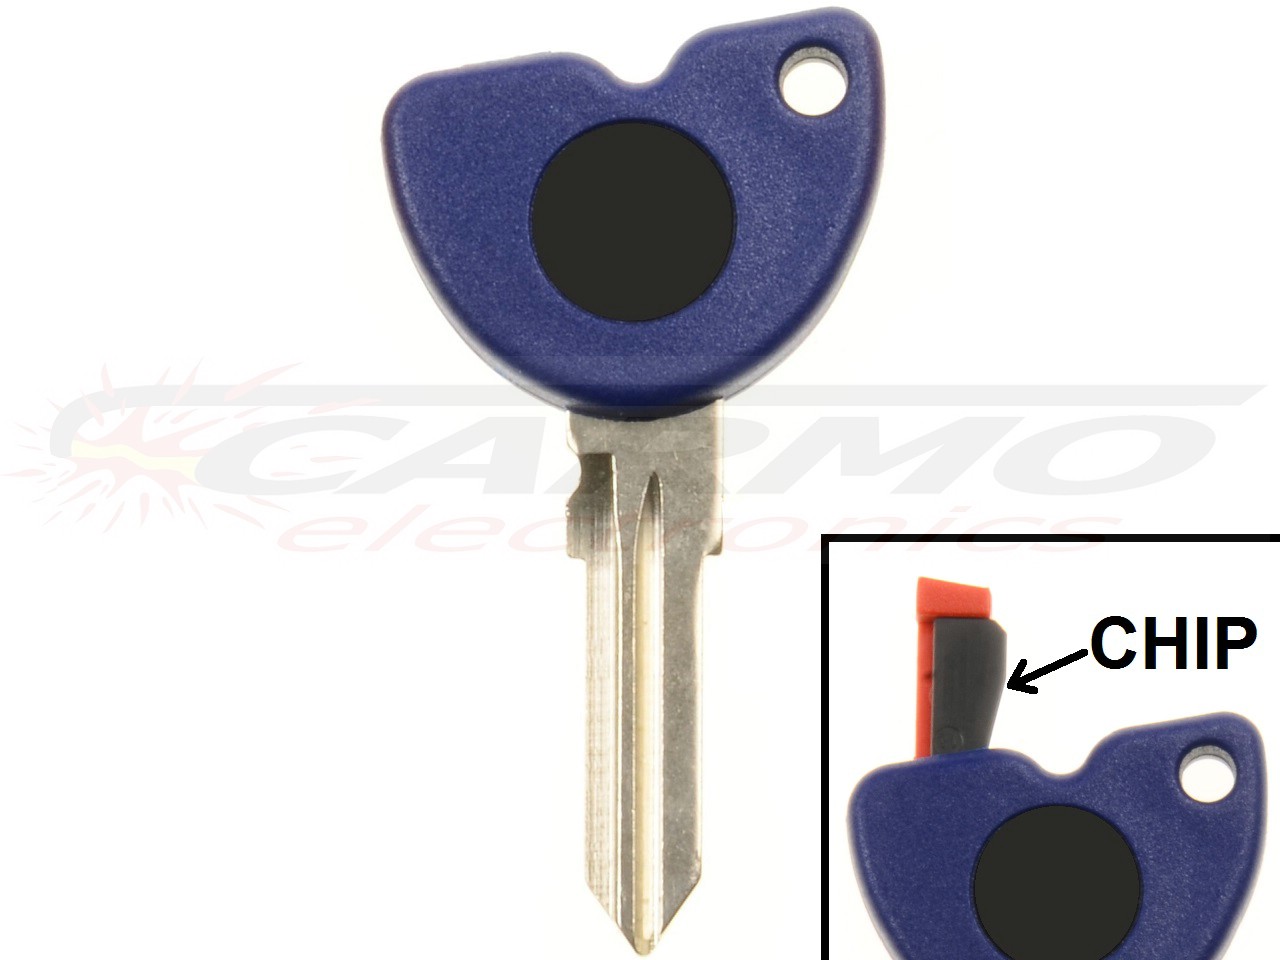 Piaggio Vespa Gilera chip key + chip (PIA-1B004020, PIA-573960) - Clique na Imagem para Fechar